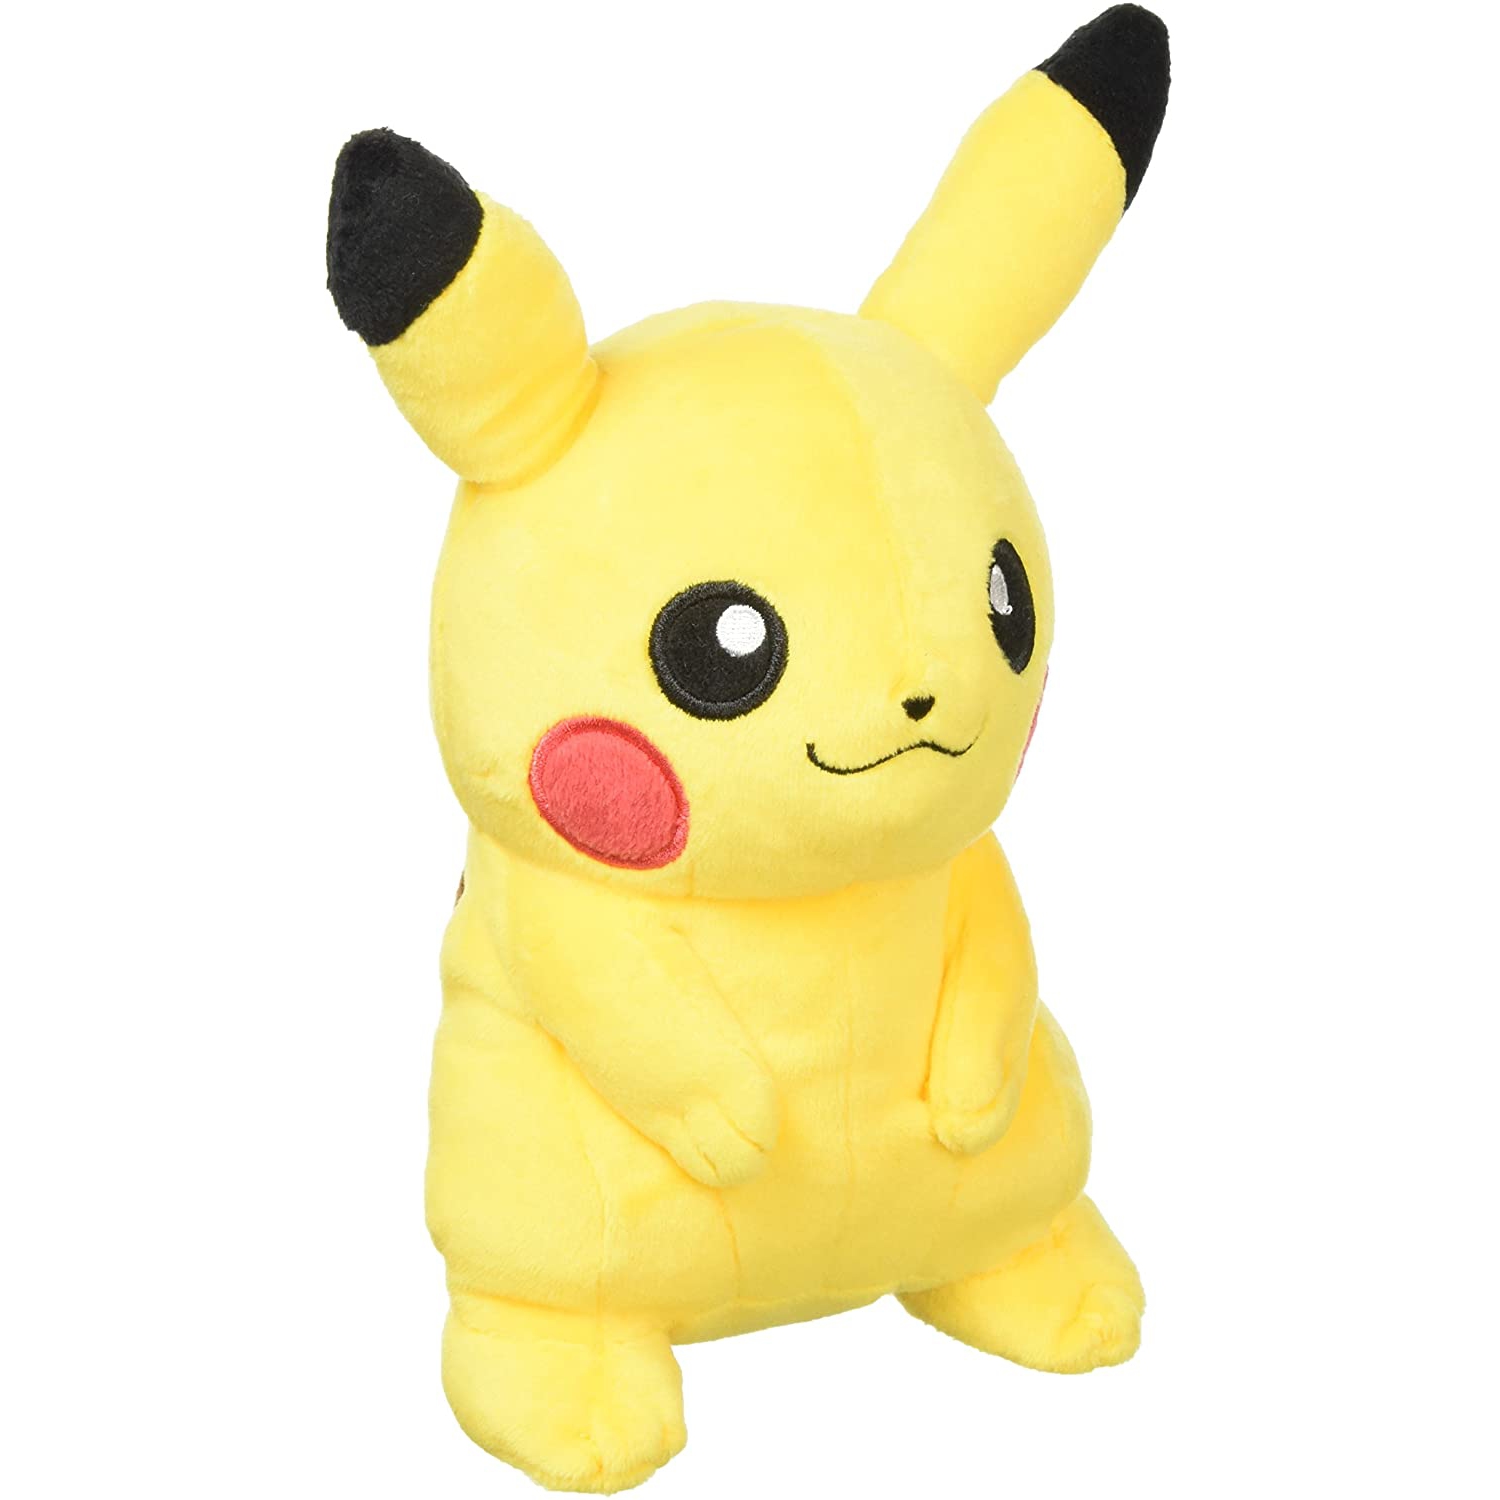 Pokemon 7" Pikachu Plush Toy